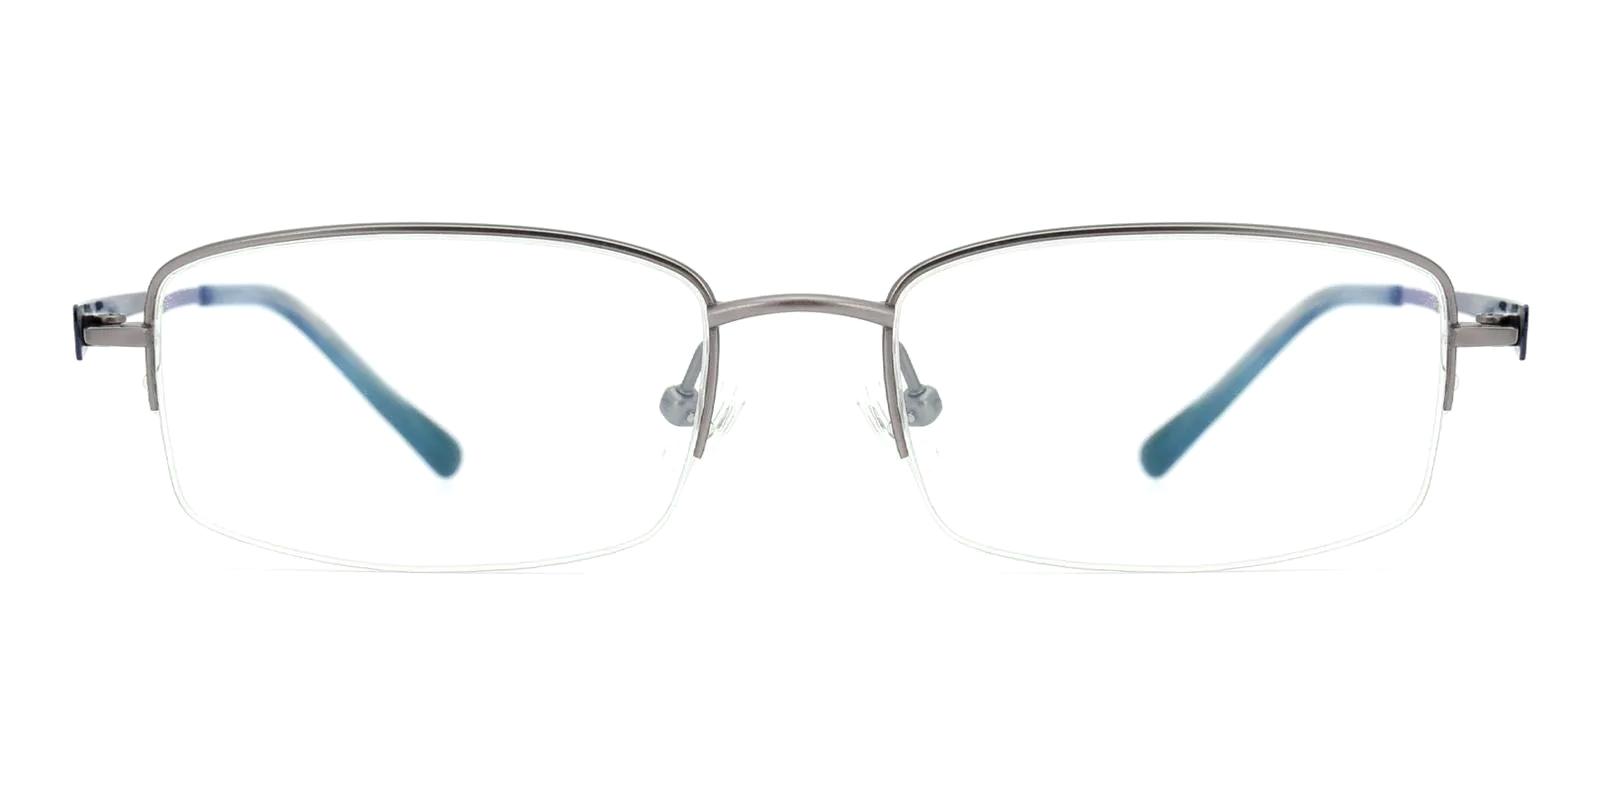 Millen Gun Titanium Eyeglasses , NosePads Frames from ABBE Glasses